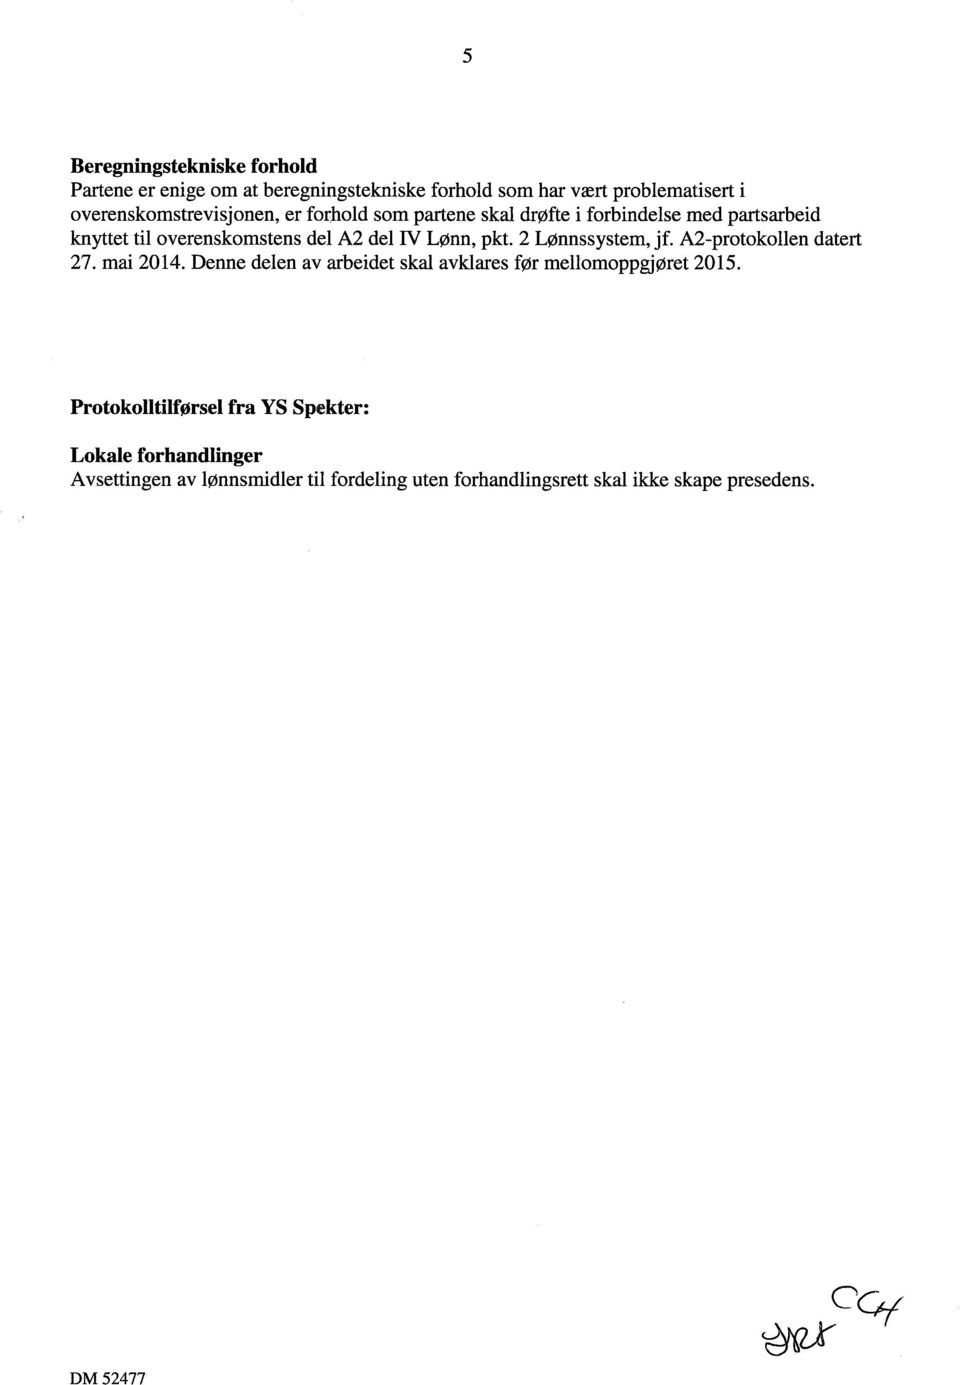 IV Lønn, pkt. 2 Lønnssystem, jf. A2-protokollen datert 27. mai 2014.